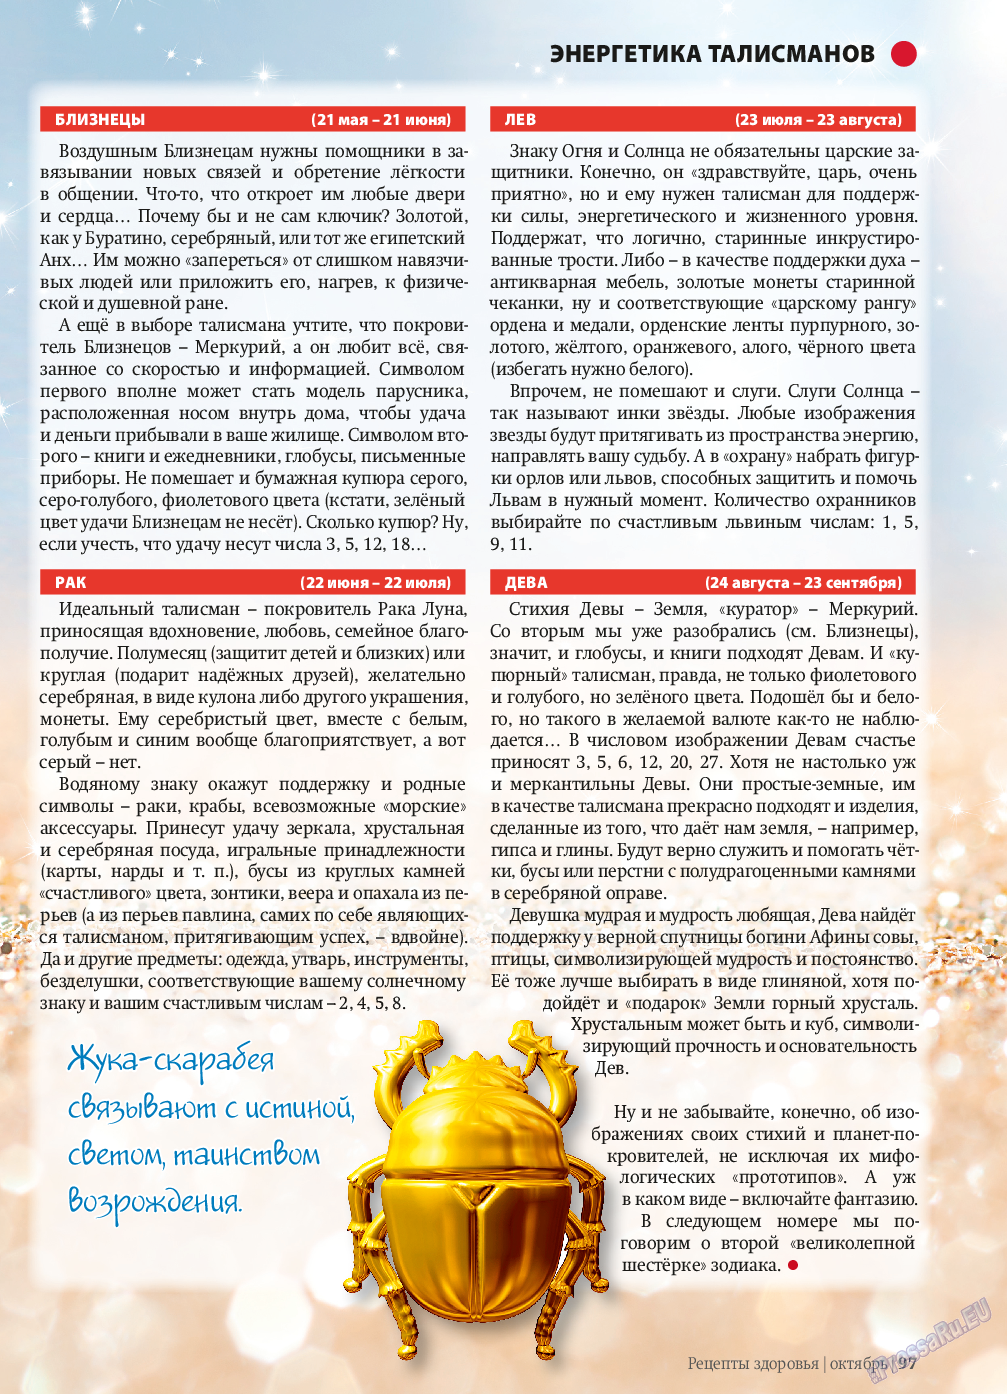 Рецепты здоровья, журнал. 2013 №10 стр.97